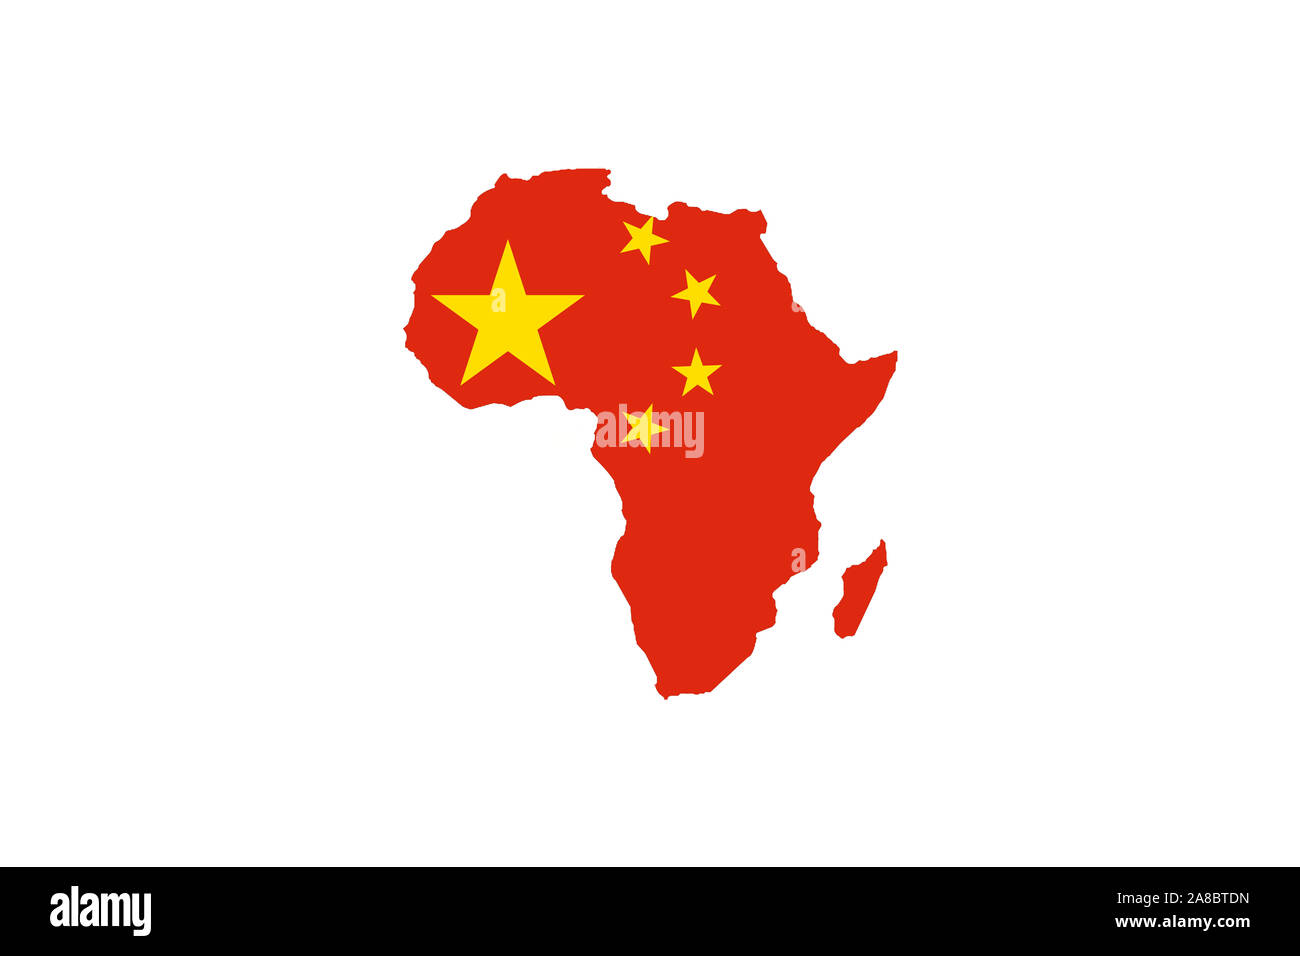 Der afrikanische Kontinent mit den Farben der chinesischen Nationalfahne, Afrika in chinesischer mano, Cina auf dem Weg zur Weltmacht, Sicherung von Foto Stock